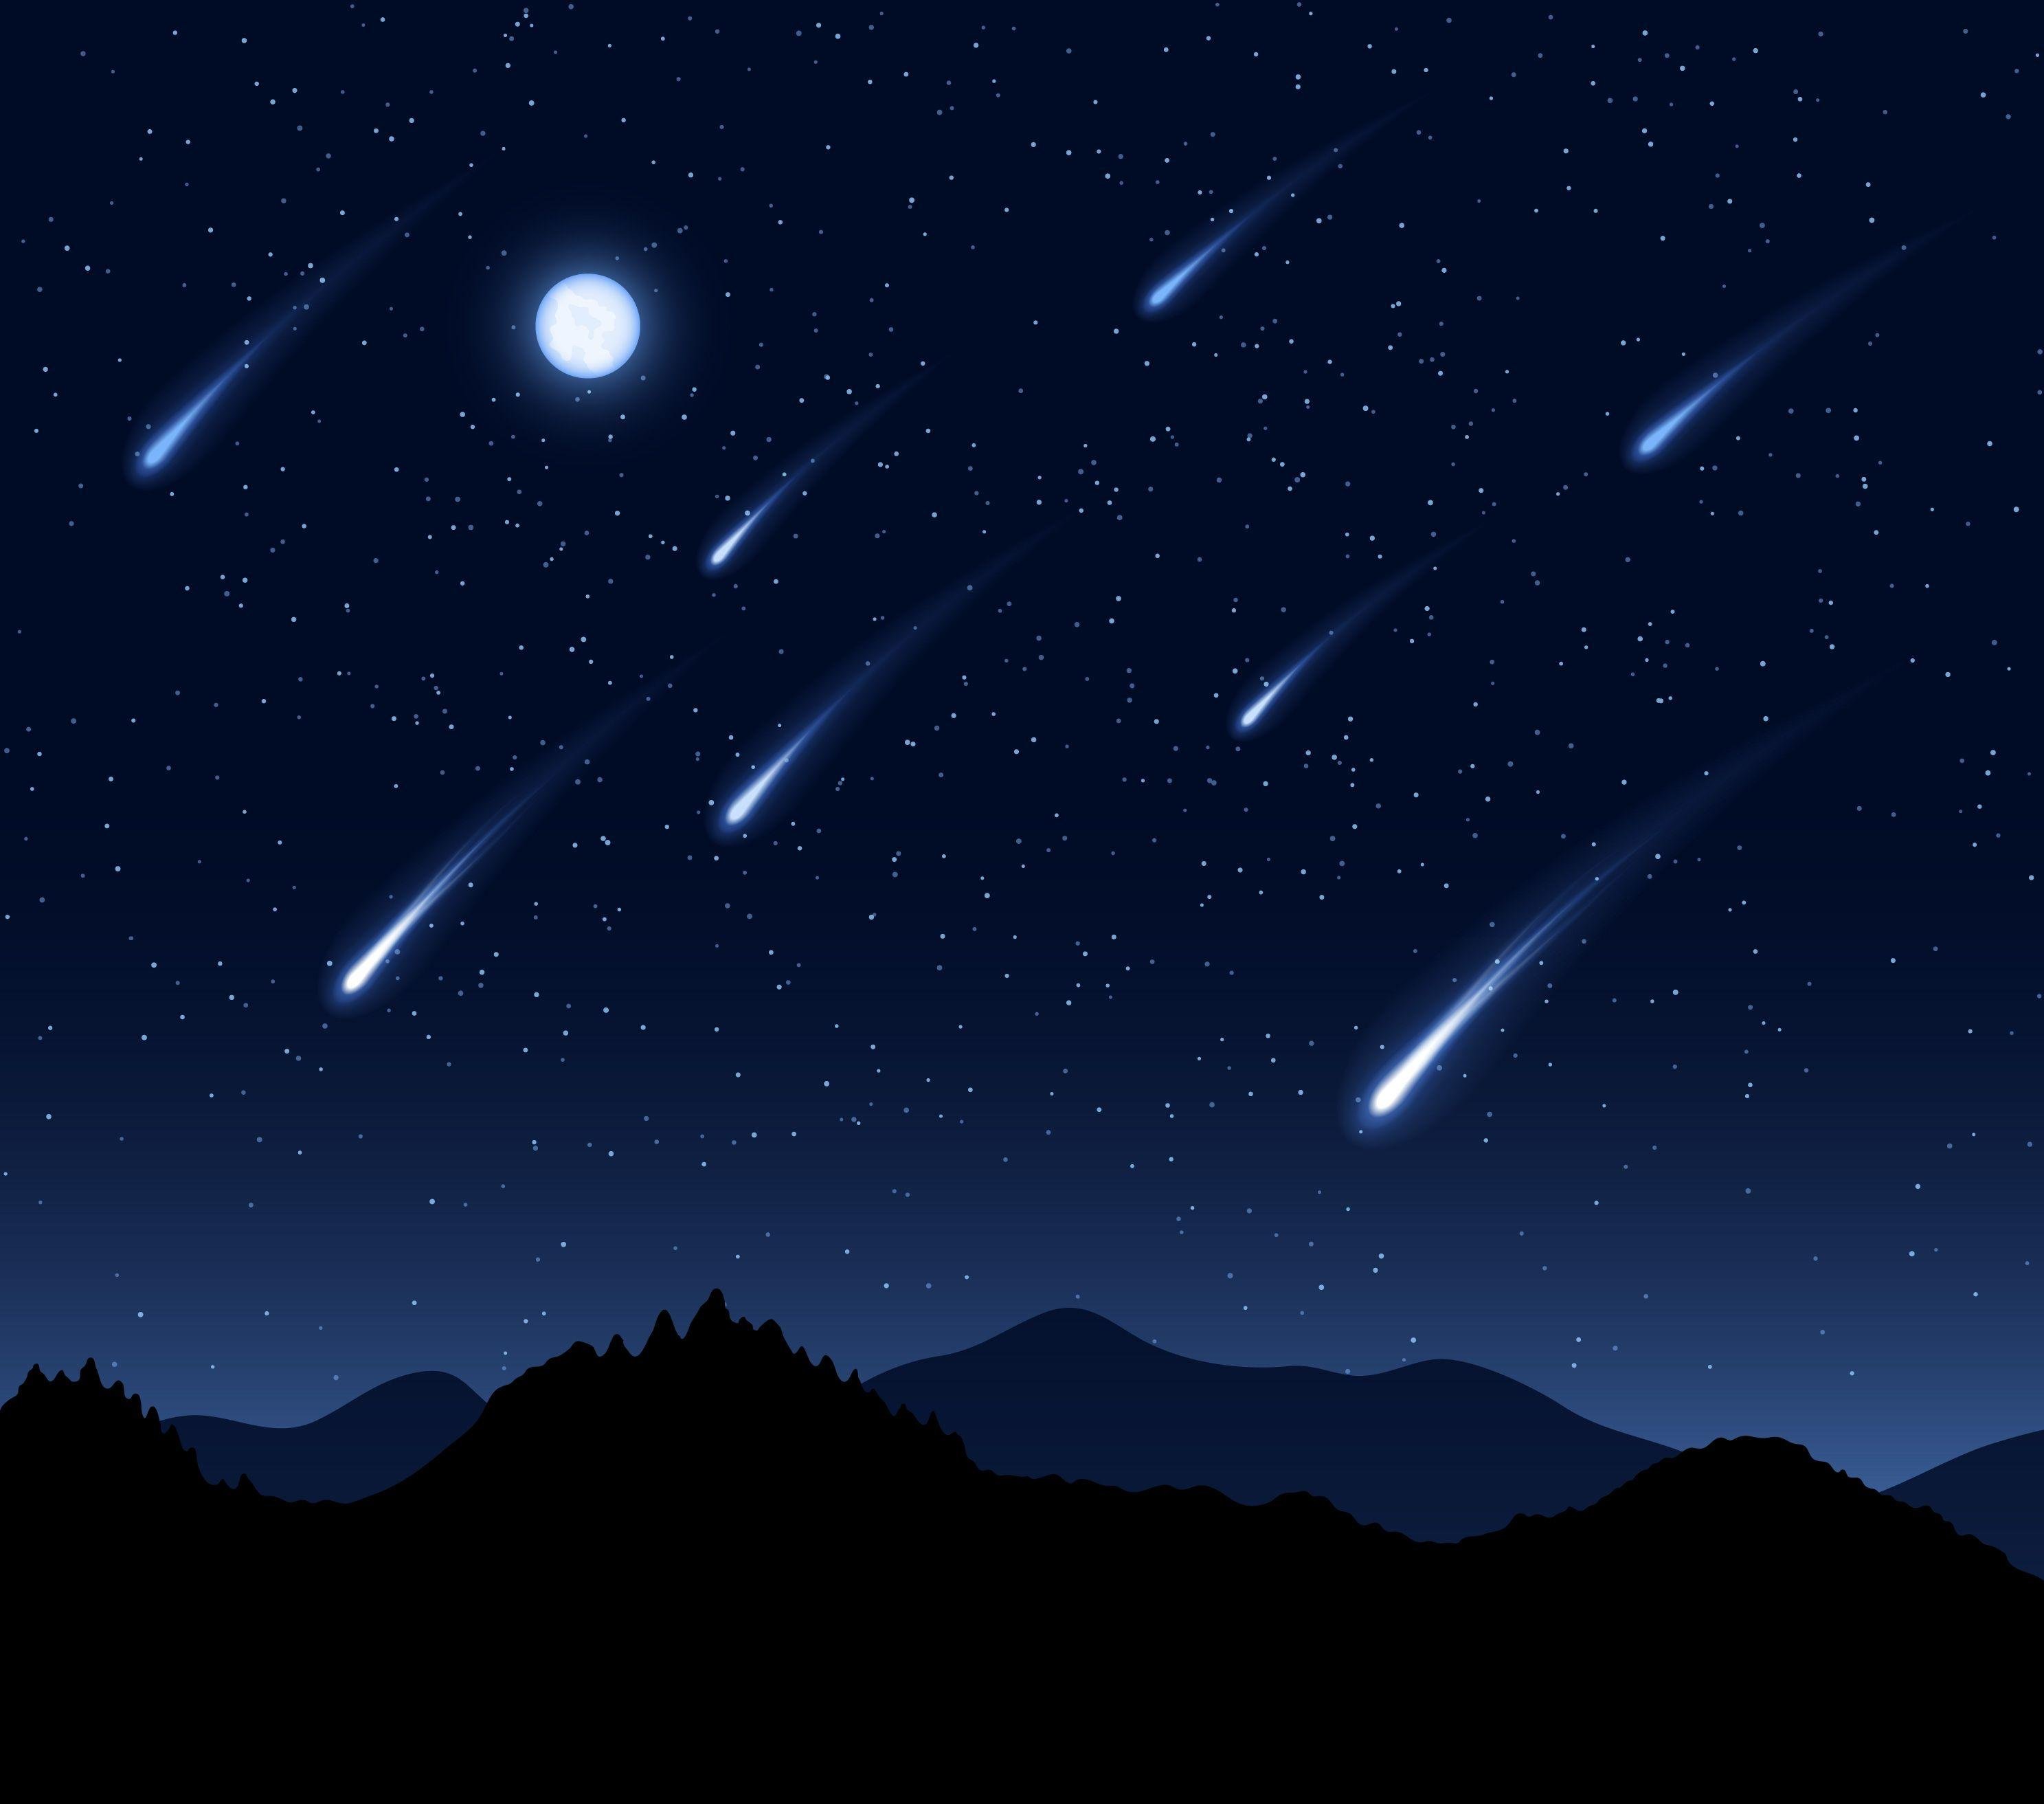 Meteorites in the night sky